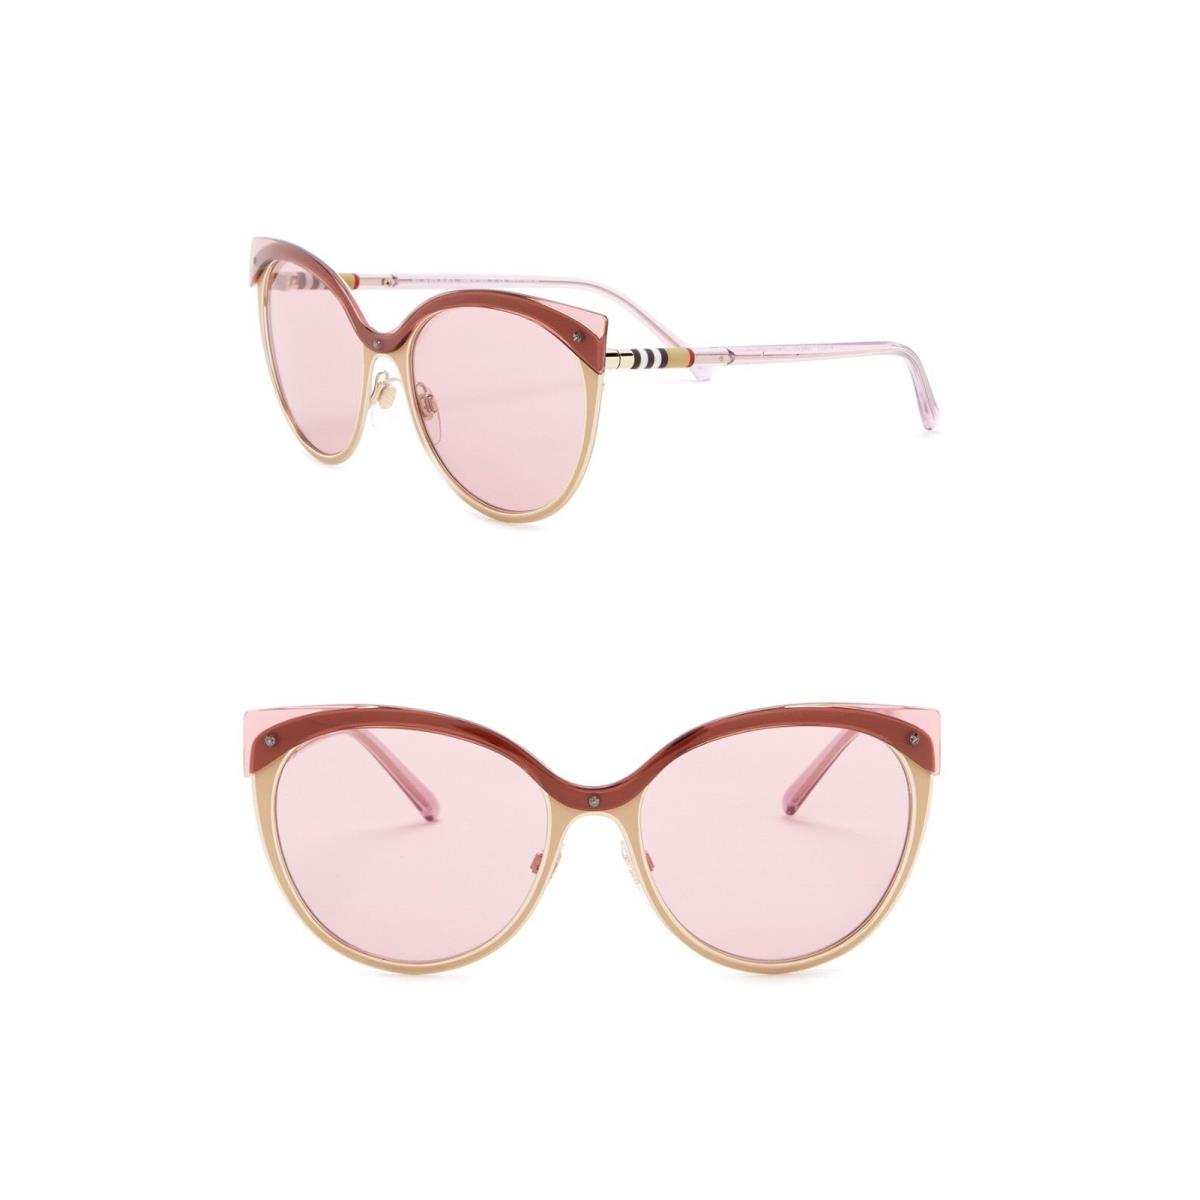 Burberry sunglasses  - Beige/Brushed/ Gold-tone Frame, Light Pink Lens 0